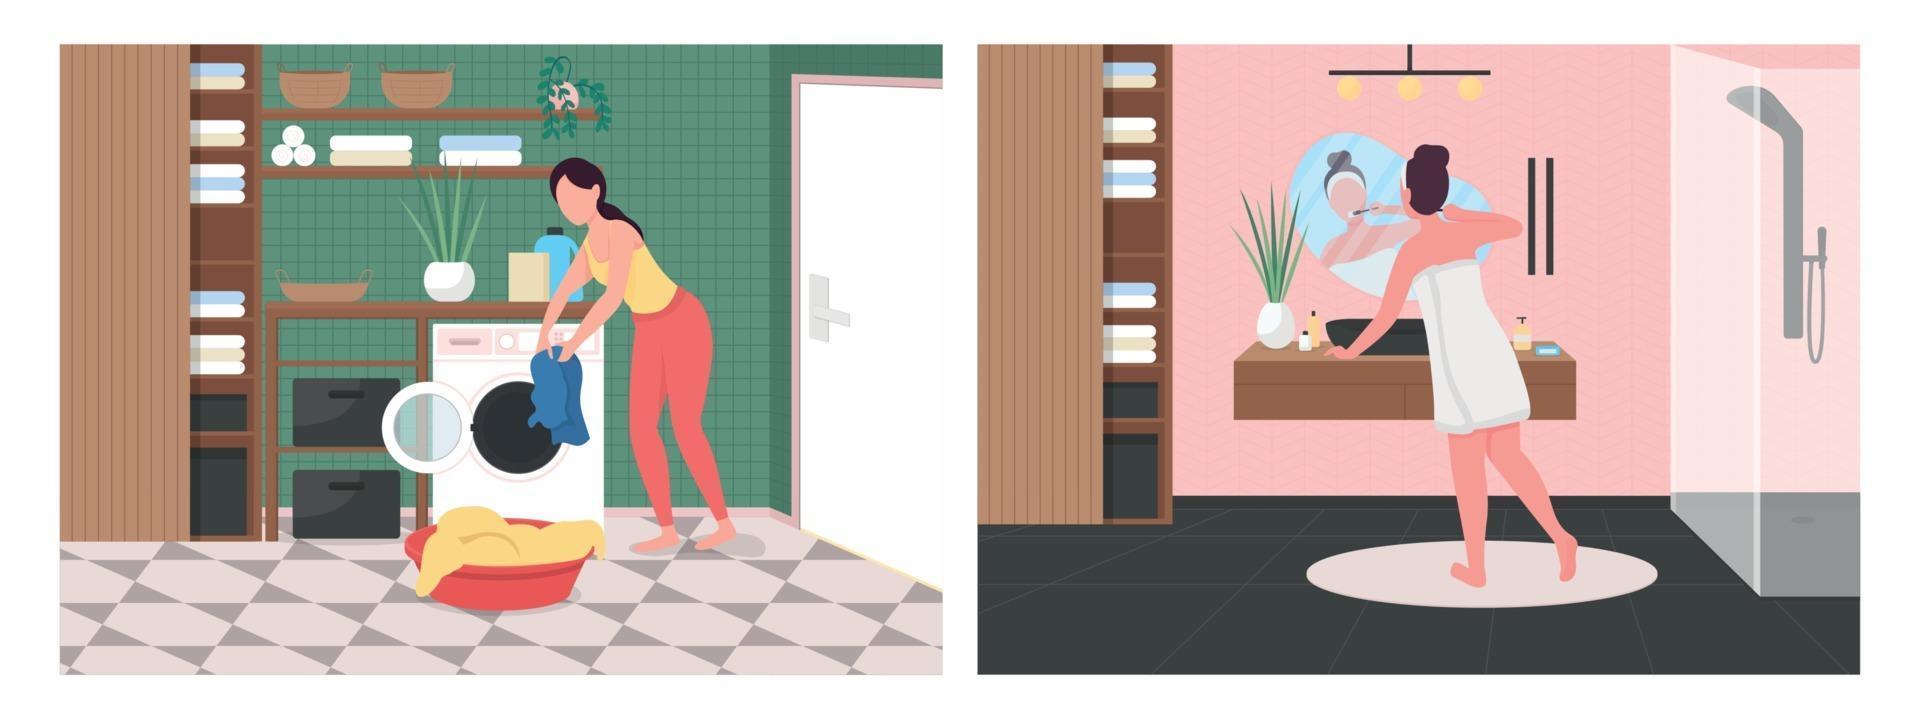 routine quotidienne dans l'ensemble d'illustrations vectorielles couleur plat de salle de bain vecteur